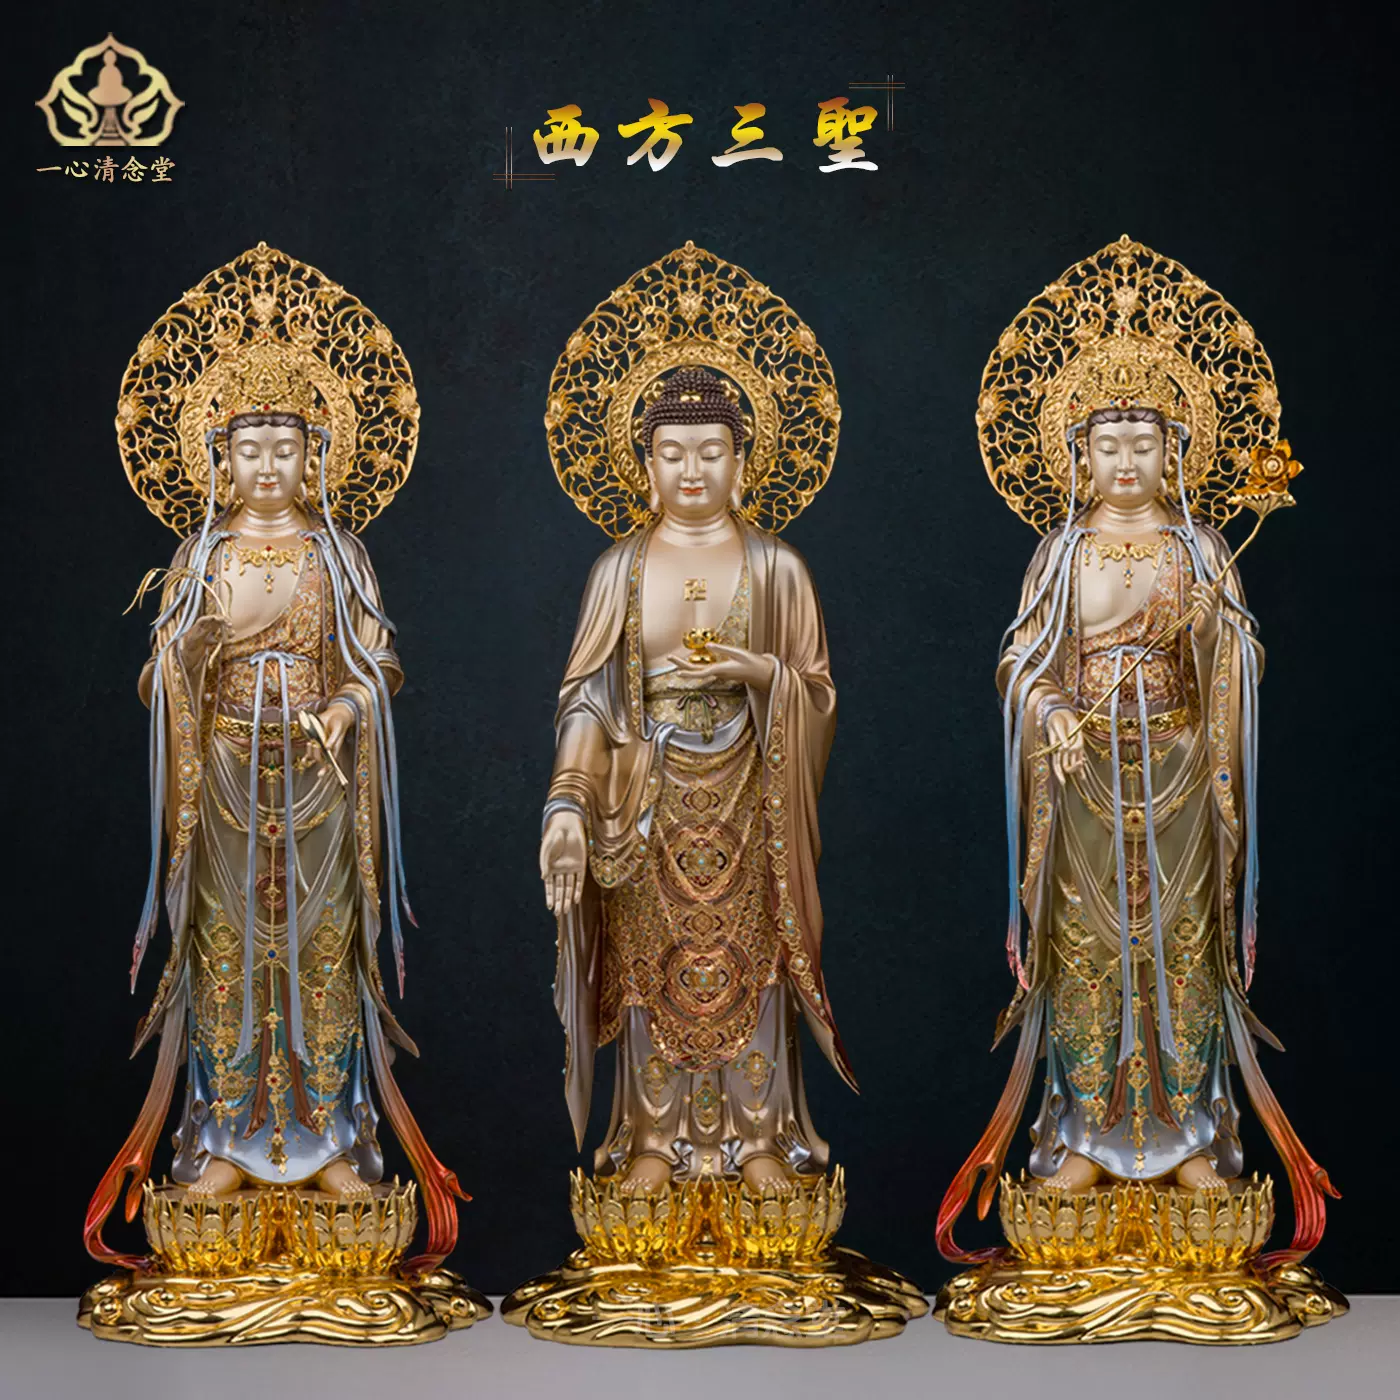 西方三圣像观世音菩萨像阿弥陀佛释迦牟尼佛大势至菩萨像铜像摆件-Taobao